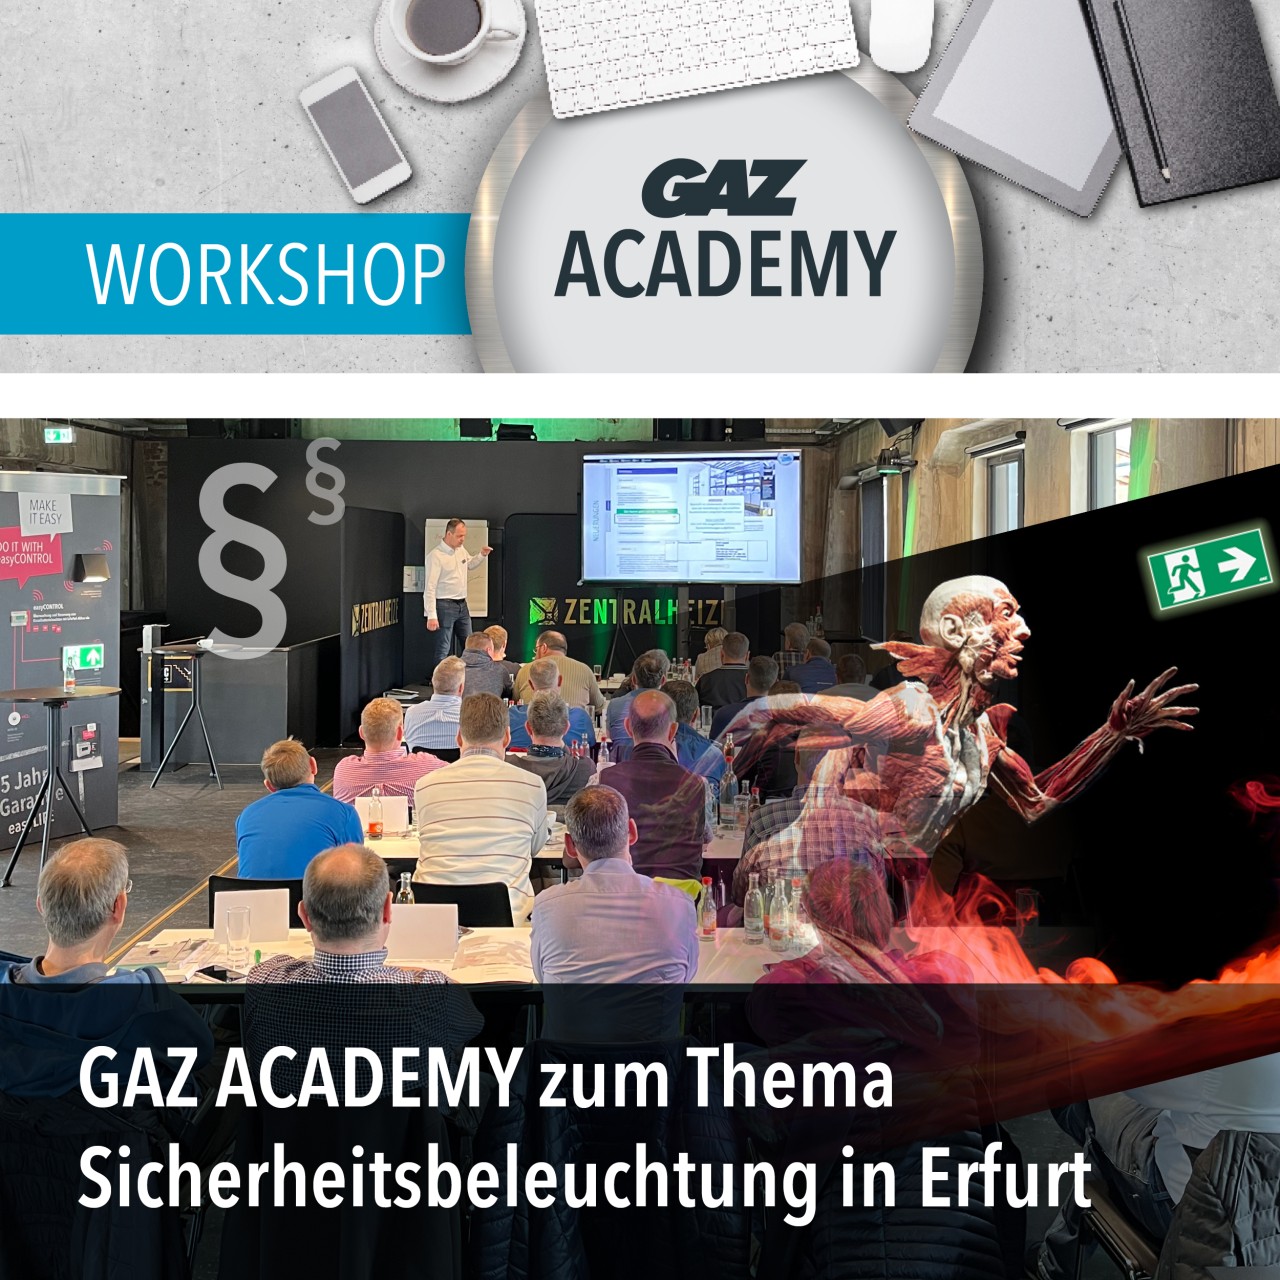 gaz_academy_erfurt_notlicht_600x600px